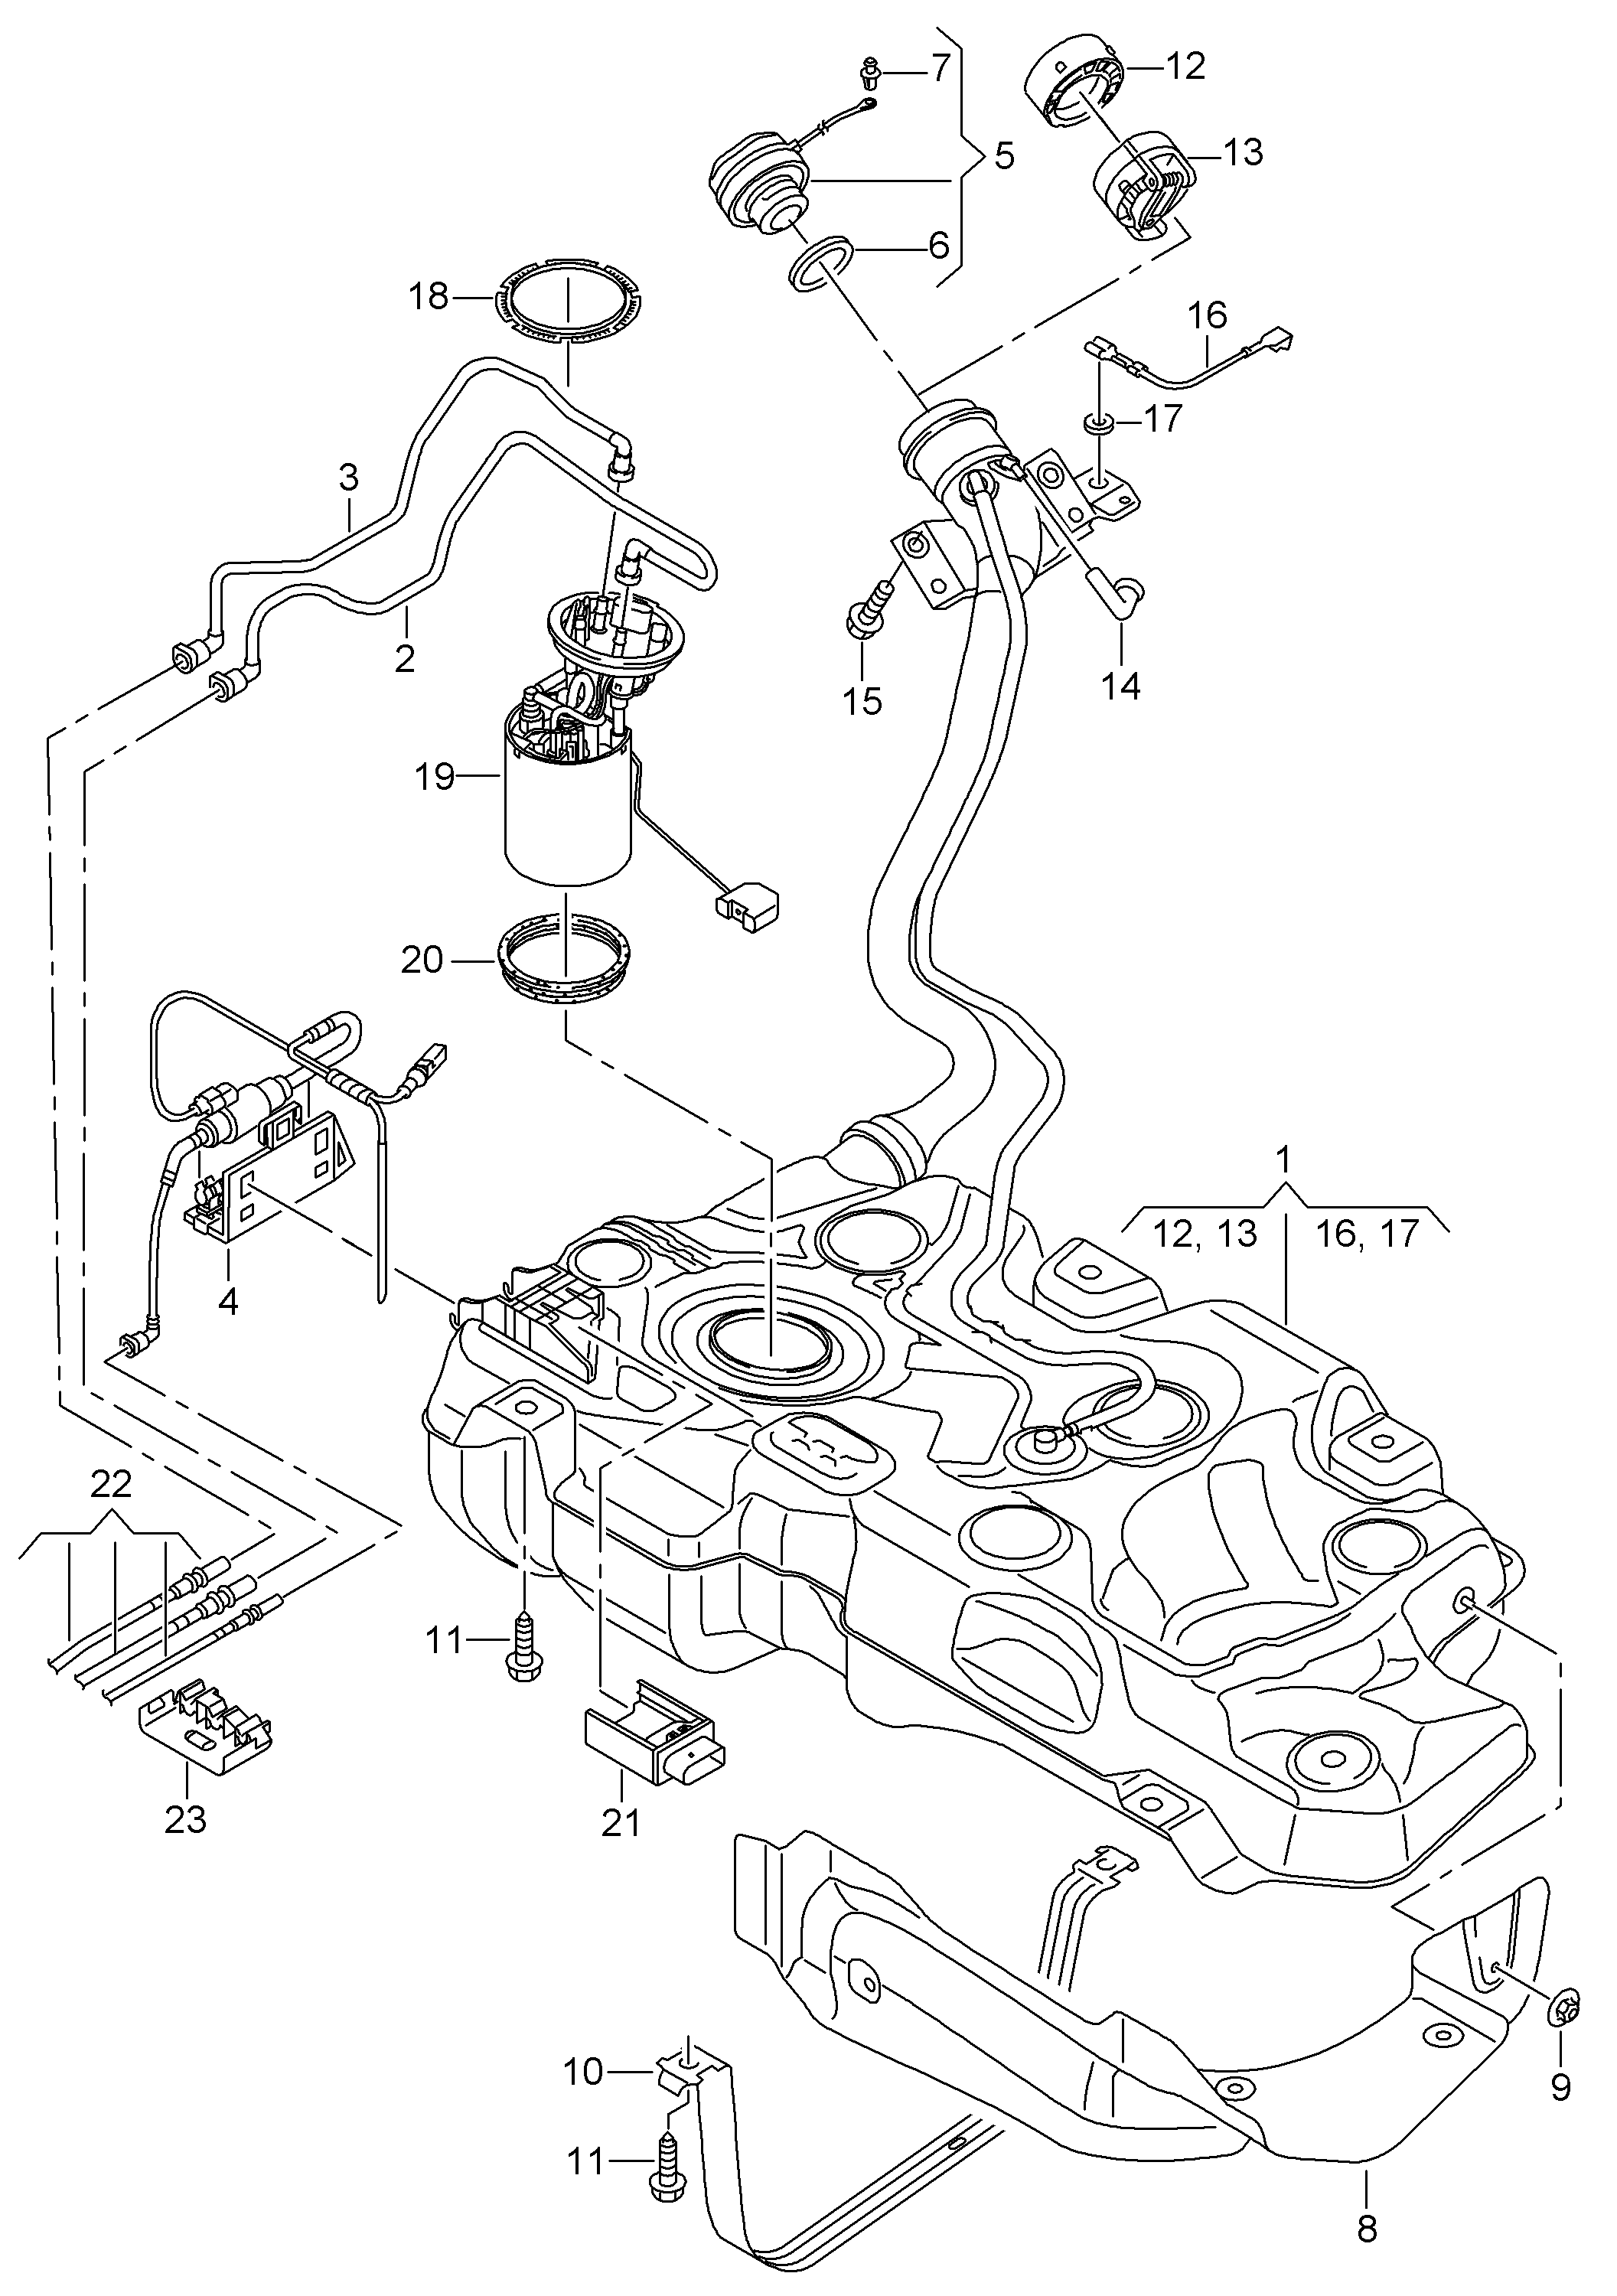 fuel tank with
attachments - Leon/Leon 4(LE)  